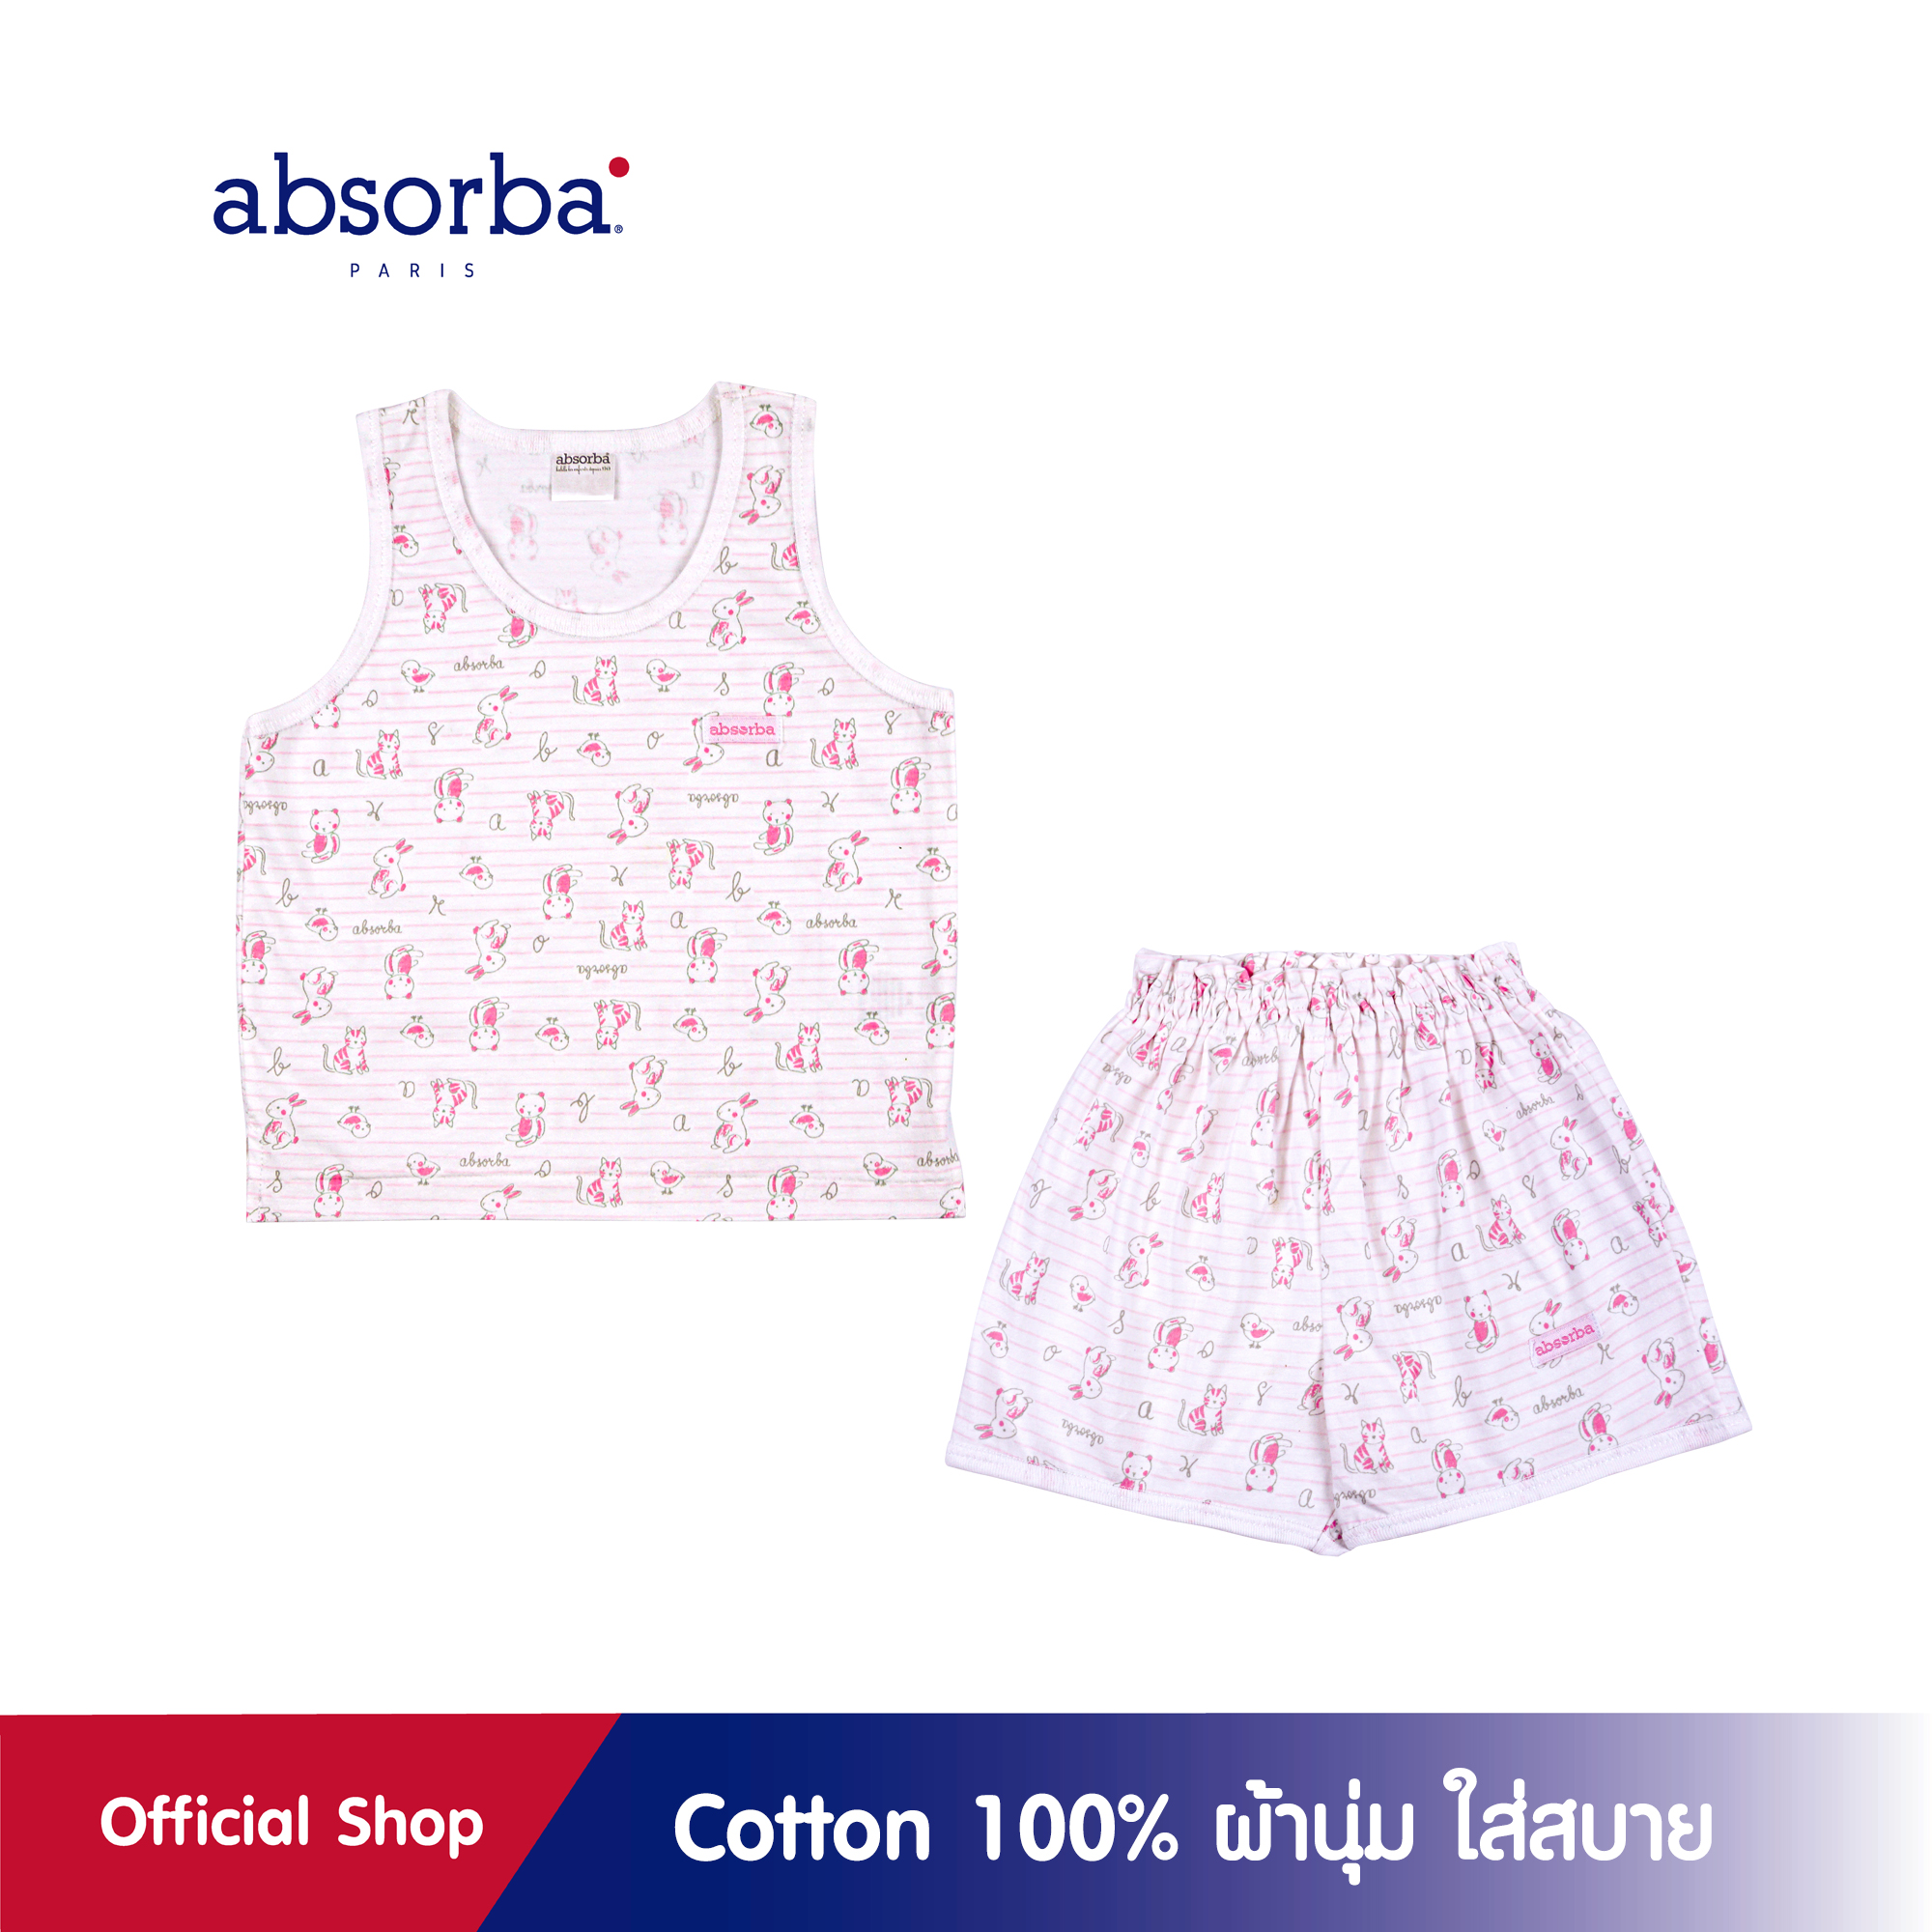 absorba(แอ็บซอร์บา)ชุดเสื้อกล้ามเด็ก ผ้าคอตตอนแท้ 100% สำหรับเด็กอายุ 6 เดือน - 2 ปี สีชมพู แพ็ค 1 ชุด - R9Y1002PI